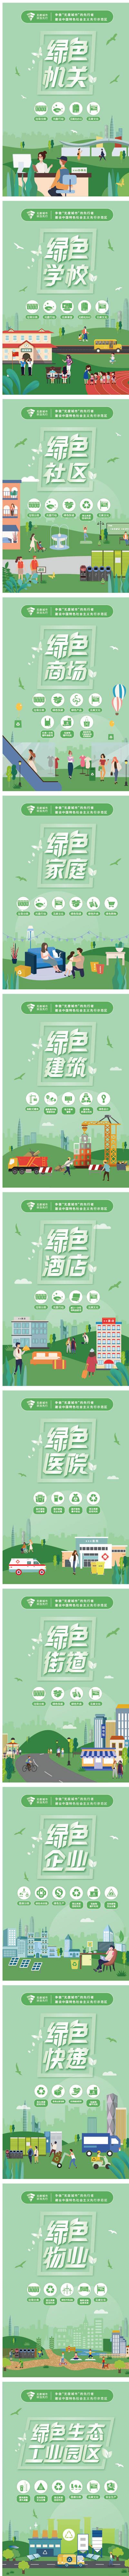 南门网 广告 海报 展板 公益 文明 城市 核心 价值观 围挡 示范 运动 城建 能源 绿色 生活 生态 示范区